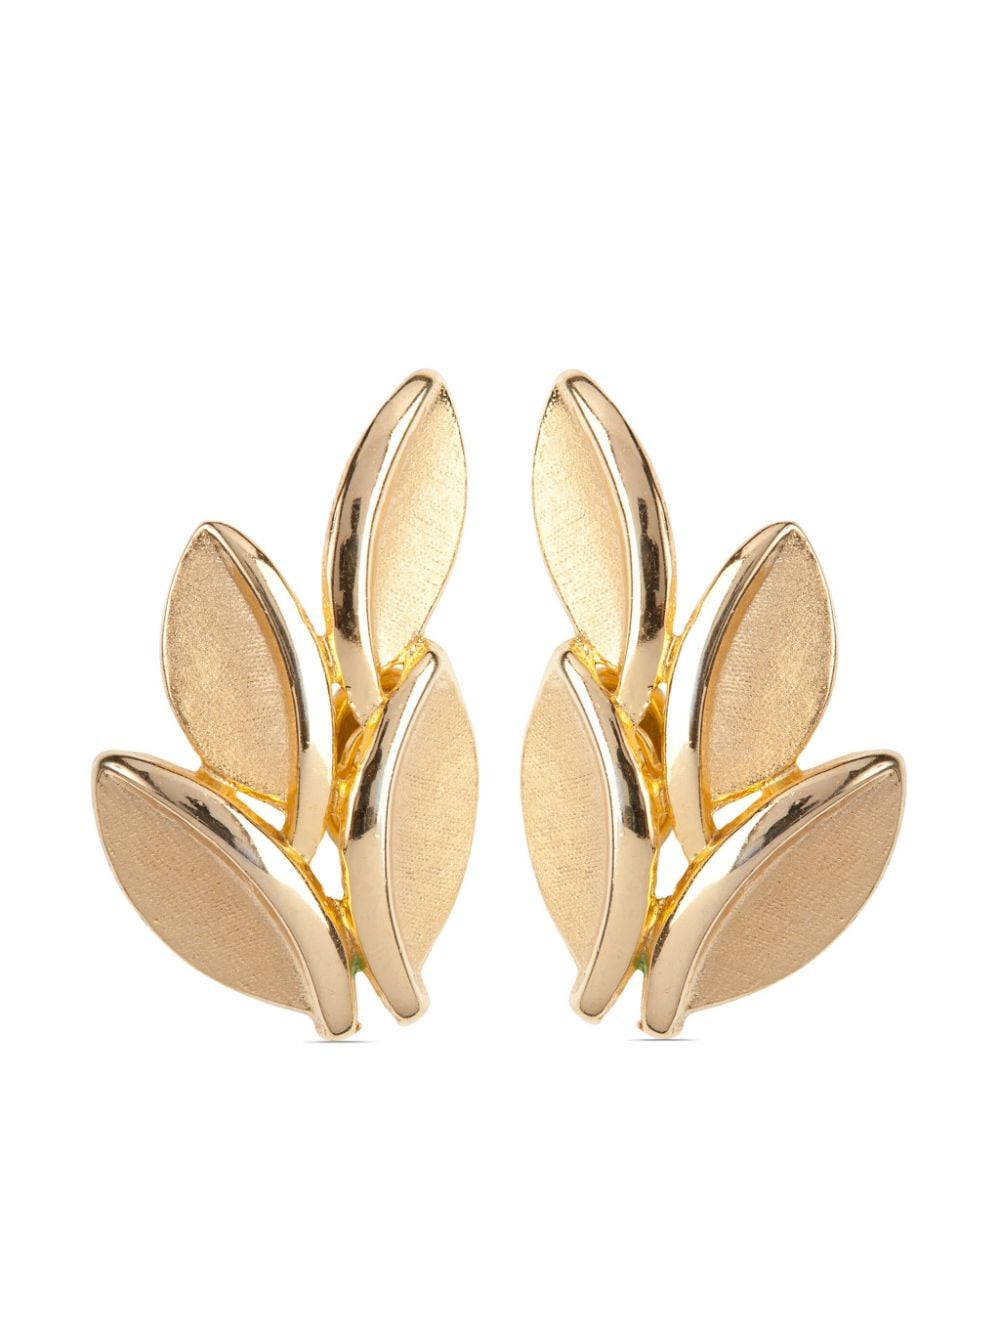 Pre-owned Susan Caplan Vintage 1960 Trifari Clip-on Earrings In Gold